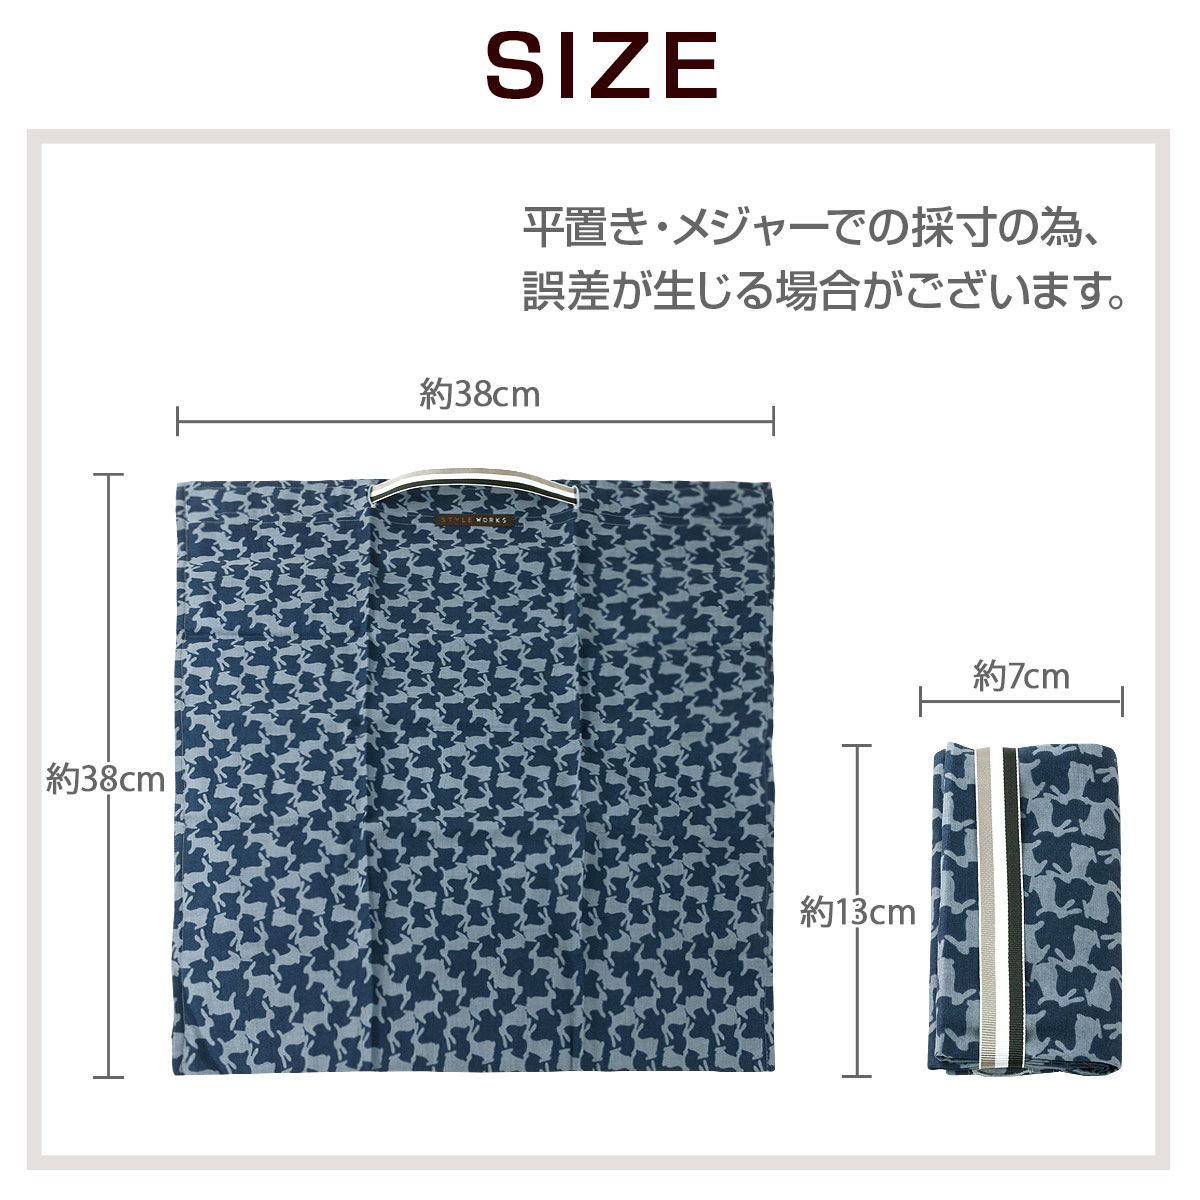 エコバッグ 和テイストのウサギのシルエット柄 Style Works 日本製 ネイビー シャツ生地雑貨 Style Works スタイルワークス 公式 Yamaki オンラインショップ ワイシャツの山喜